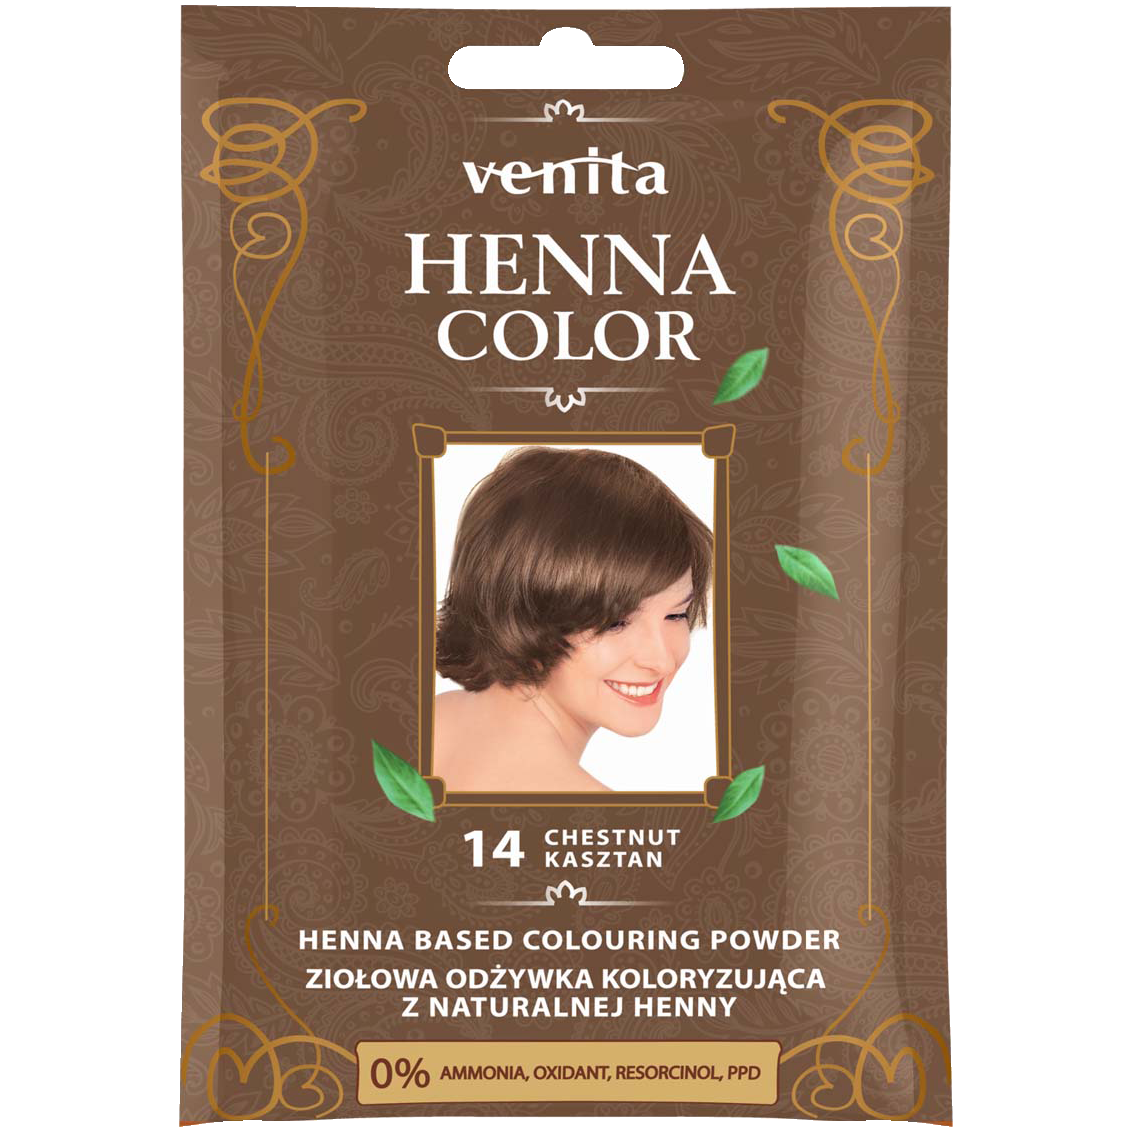 Травяной кондиционер-краситель с хной для волос 14 каштан Venita Henna Color, 75 гр